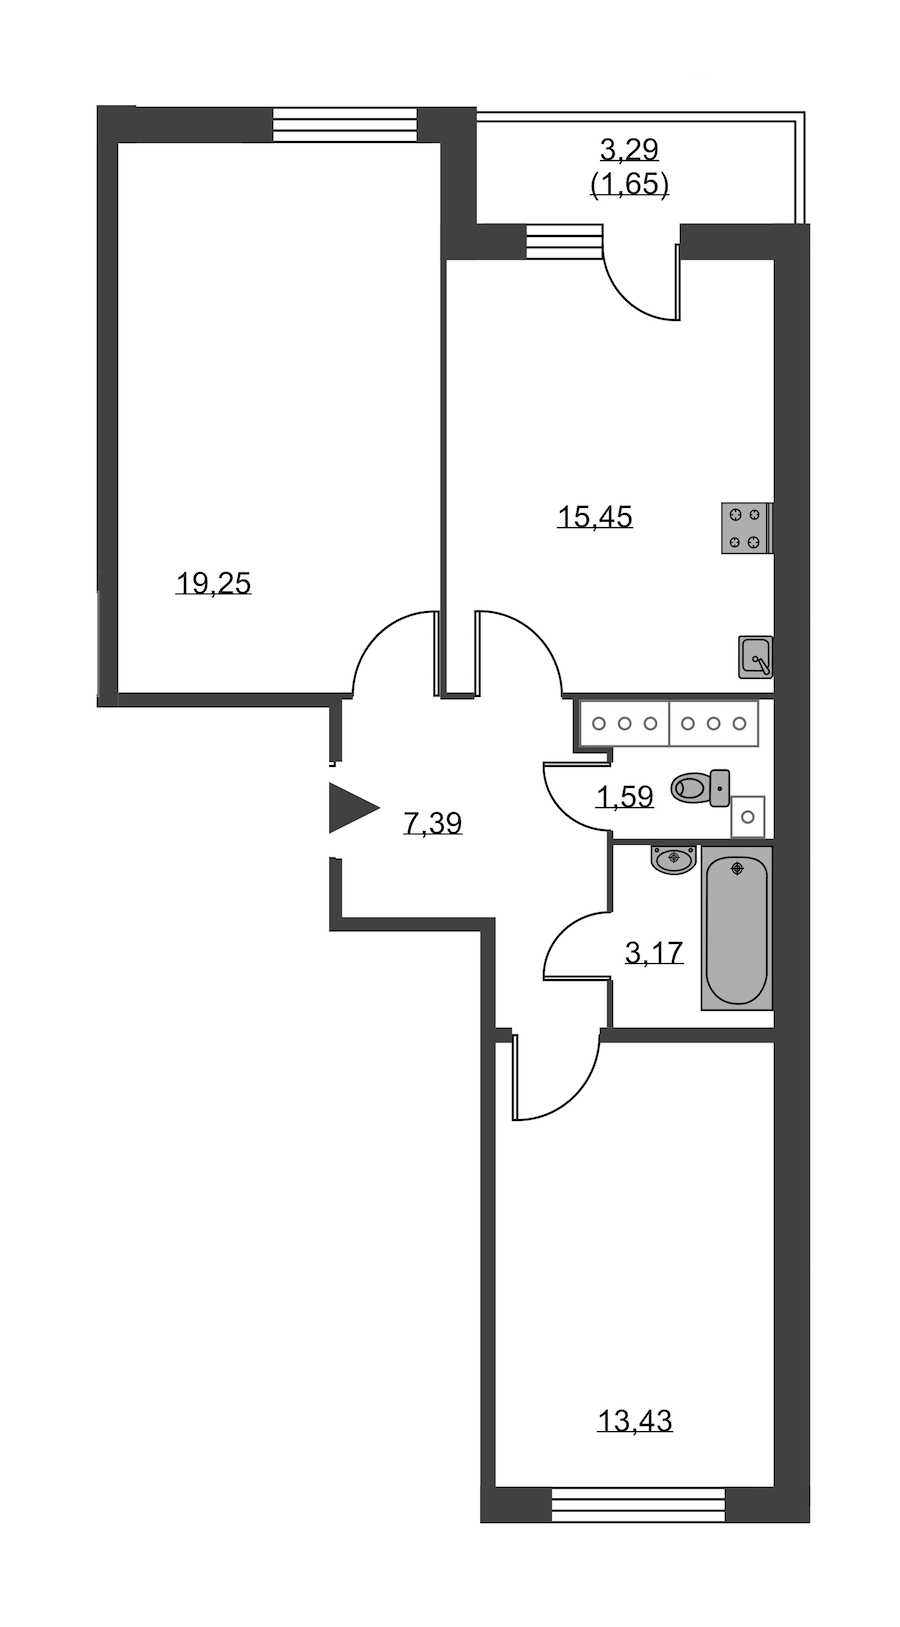 Двухкомнатная квартира в : площадь 61.93 м2 , этаж: 21 – купить в Санкт-Петербурге